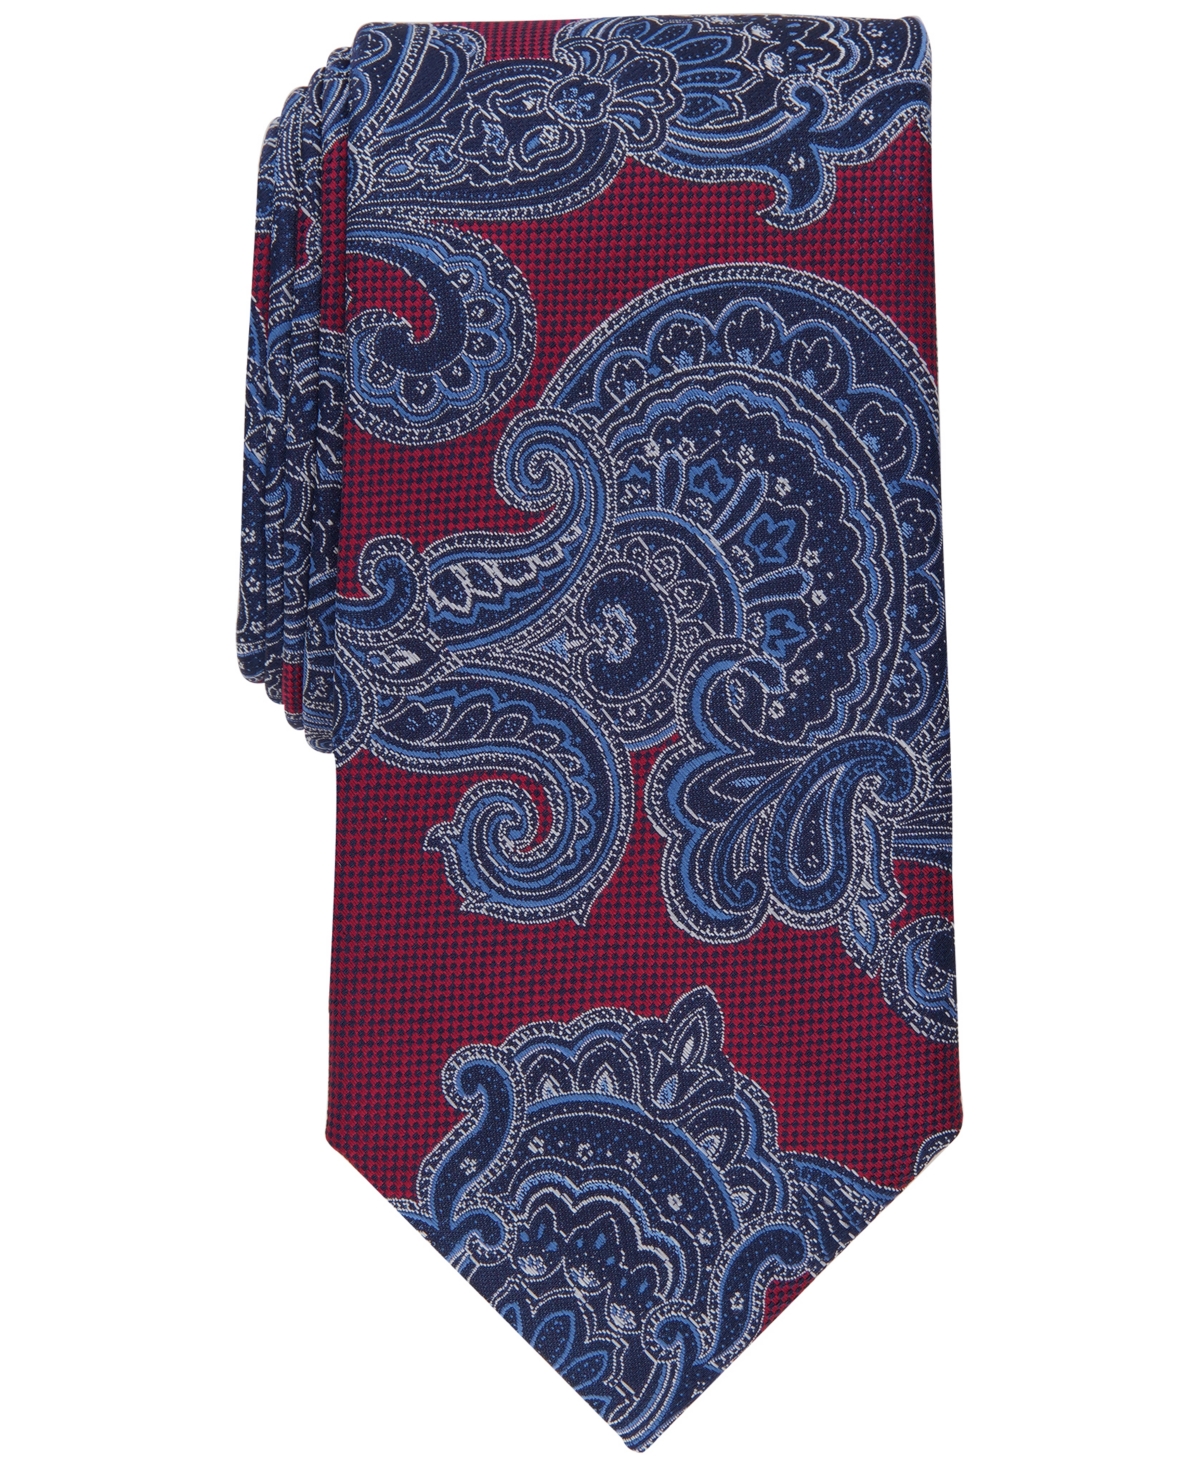 Men's Lacruz Classic Paisley Tie, Created for Macy's - Navy